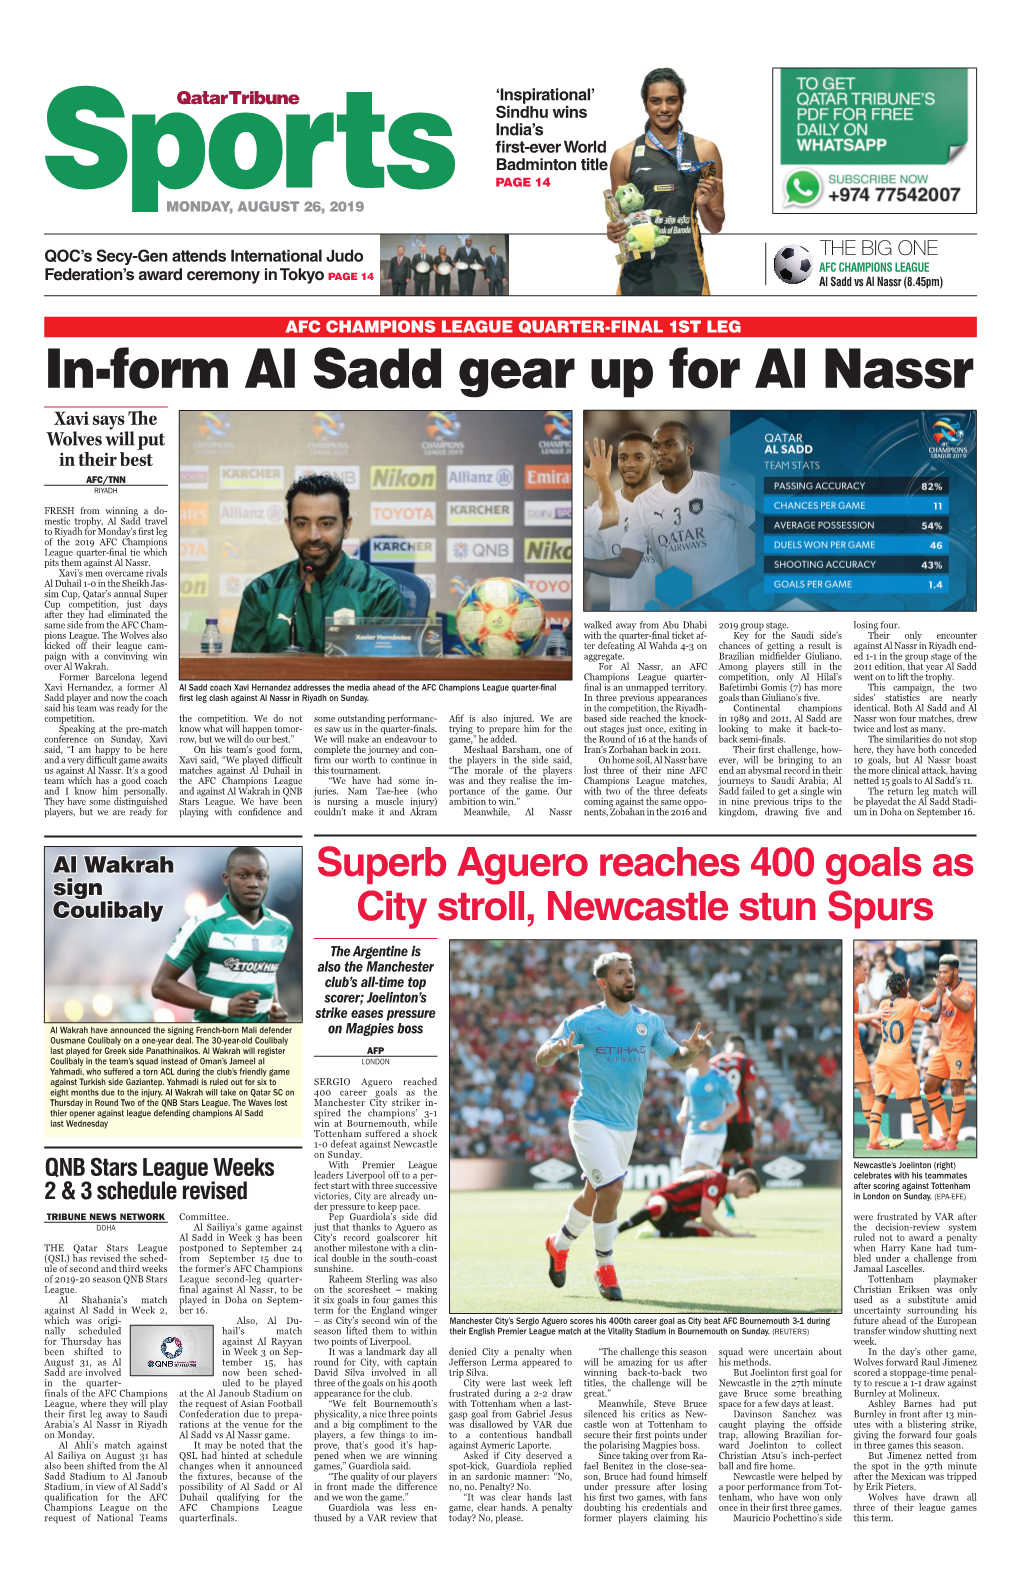 In-Form Al Sadd Gear up for Al Nassr Xavi Says the Wolves Will Put in Their Best AFC/TNN Riyadh